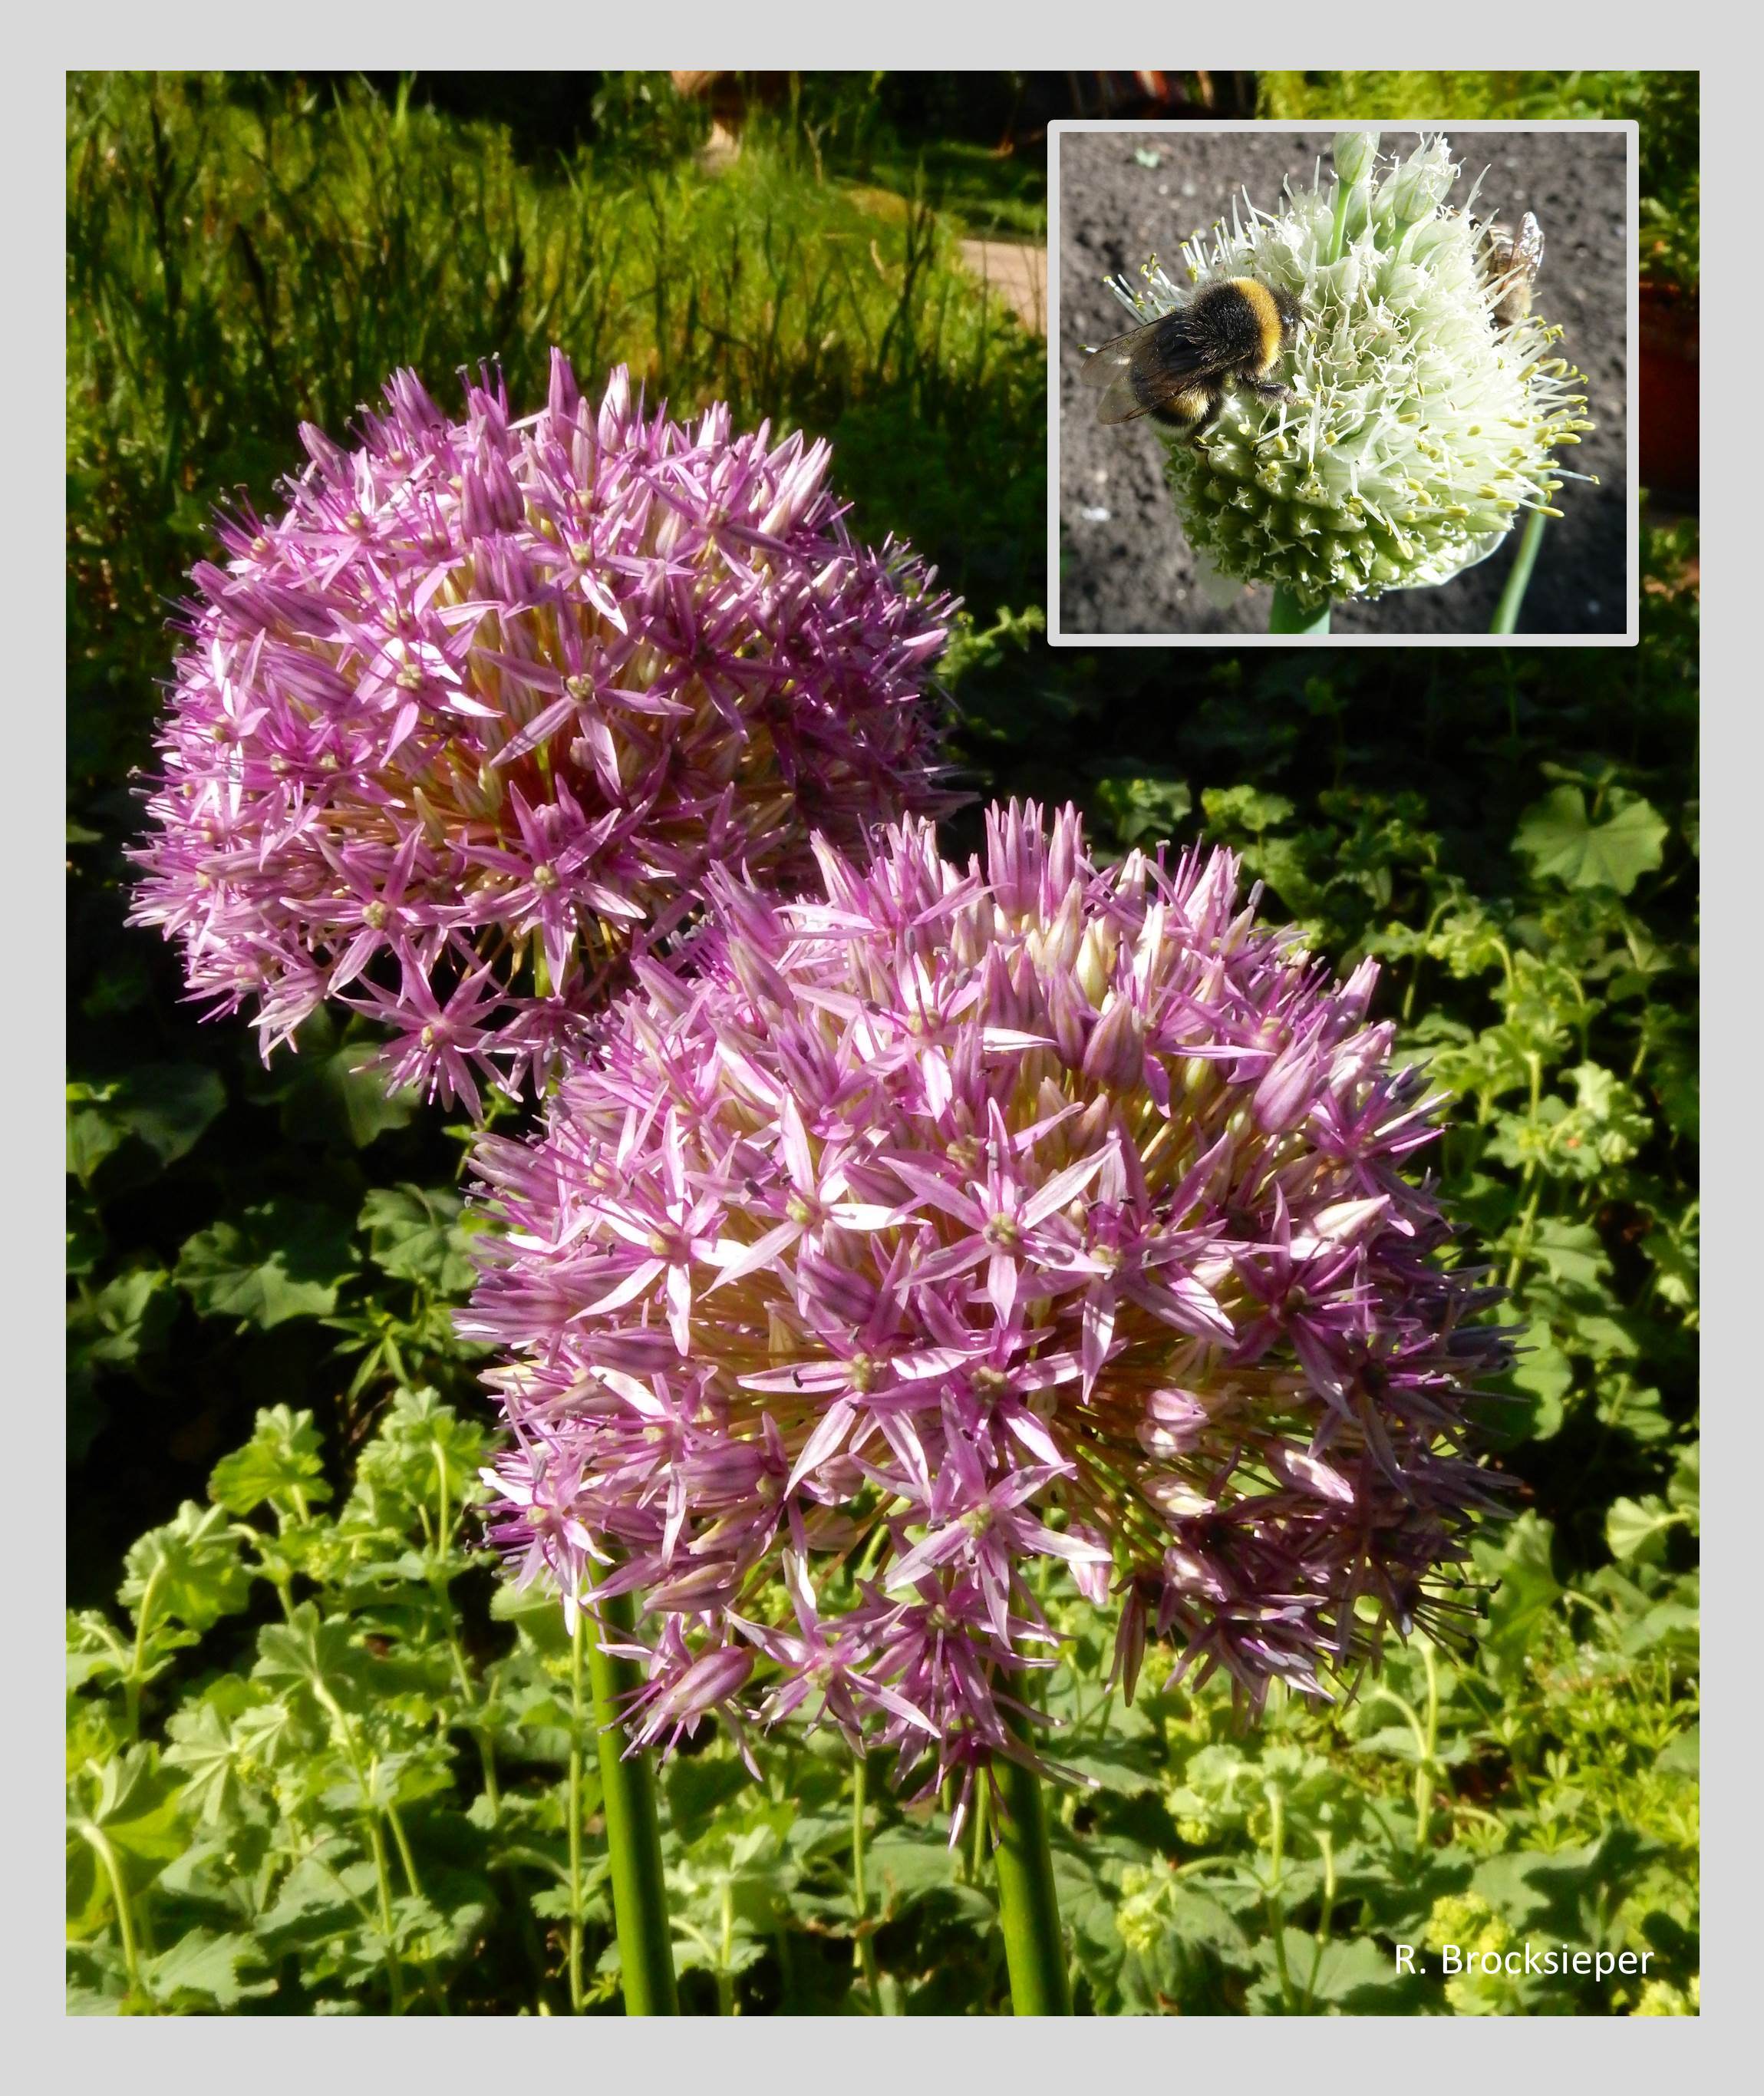 Zierlauch (Allium spec.) findet sich immer häufiger in den Gärten. Er blüht lila oder weiß in verschiedenen Höhen, reckt sich imposant über andere Stauden empor. Blüten von Zwiebel und  Schnittlauch im Gemüsebeet werden genauso gern von Insekten beflogen (kl. Bild).